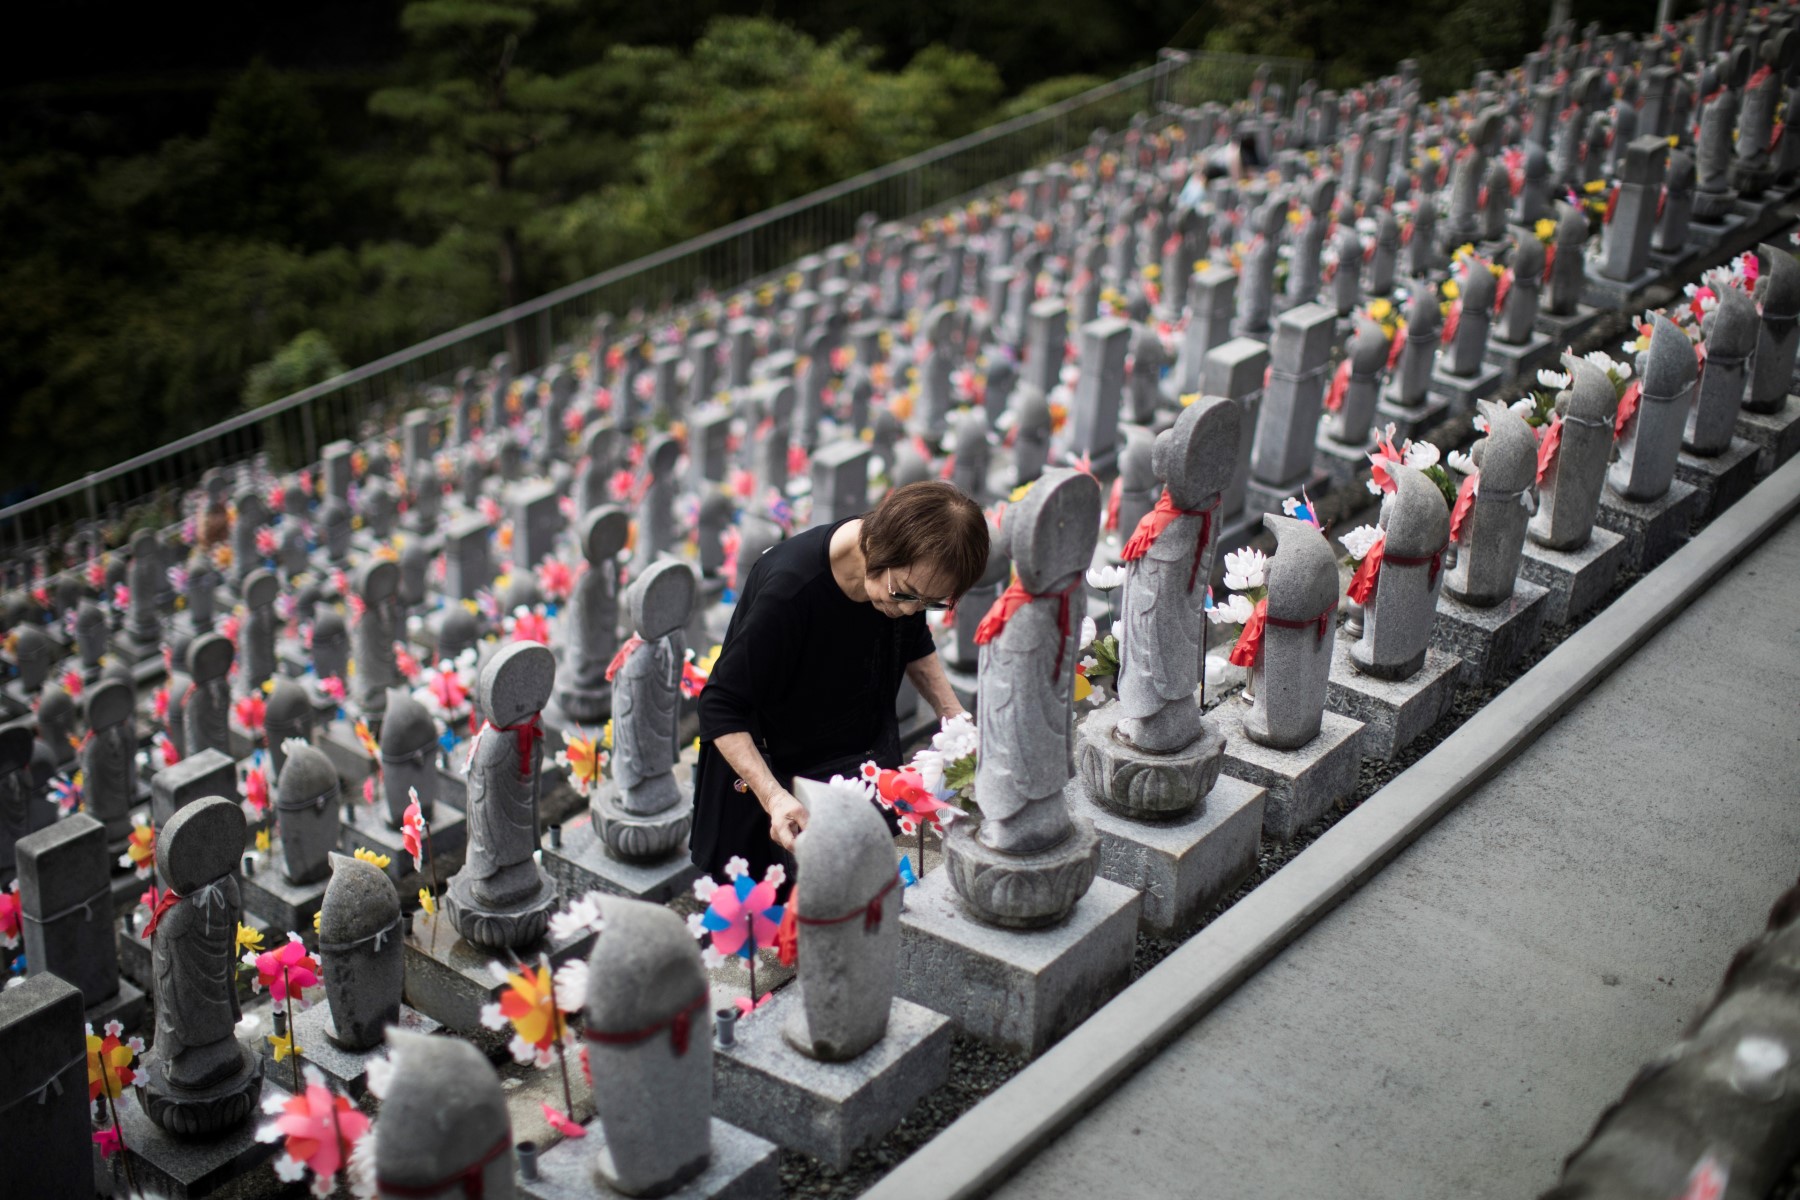 Một người phụ nữ thắp nến trước các bức tượng jizo trong chùa Phật giáo Jizoji ở Oganomachi, tỉnh Saitama, để cầu cho linh hồn của những đứa trẻ chưa chào đời hoặc những người đã chết khi còn trẻ, trong dịp Obon. Ảnh: AFP